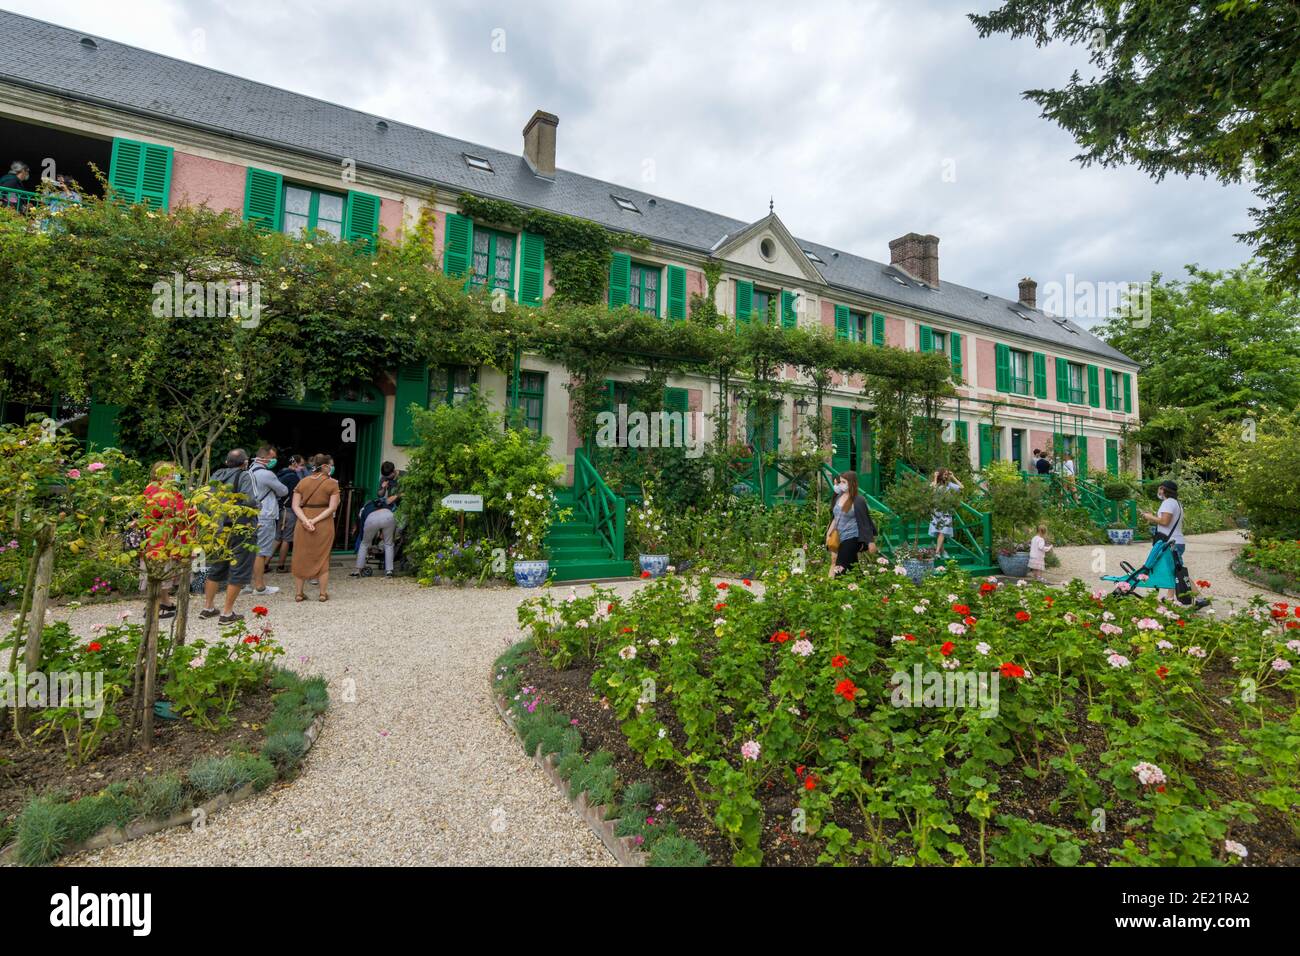 Giverny (nord de la France): Jardin de Claude Monet. Touristes et visiteurs dans le jardin de Claude Monet après la levée des restrictions de confinement. Prix Garden Banque D'Images